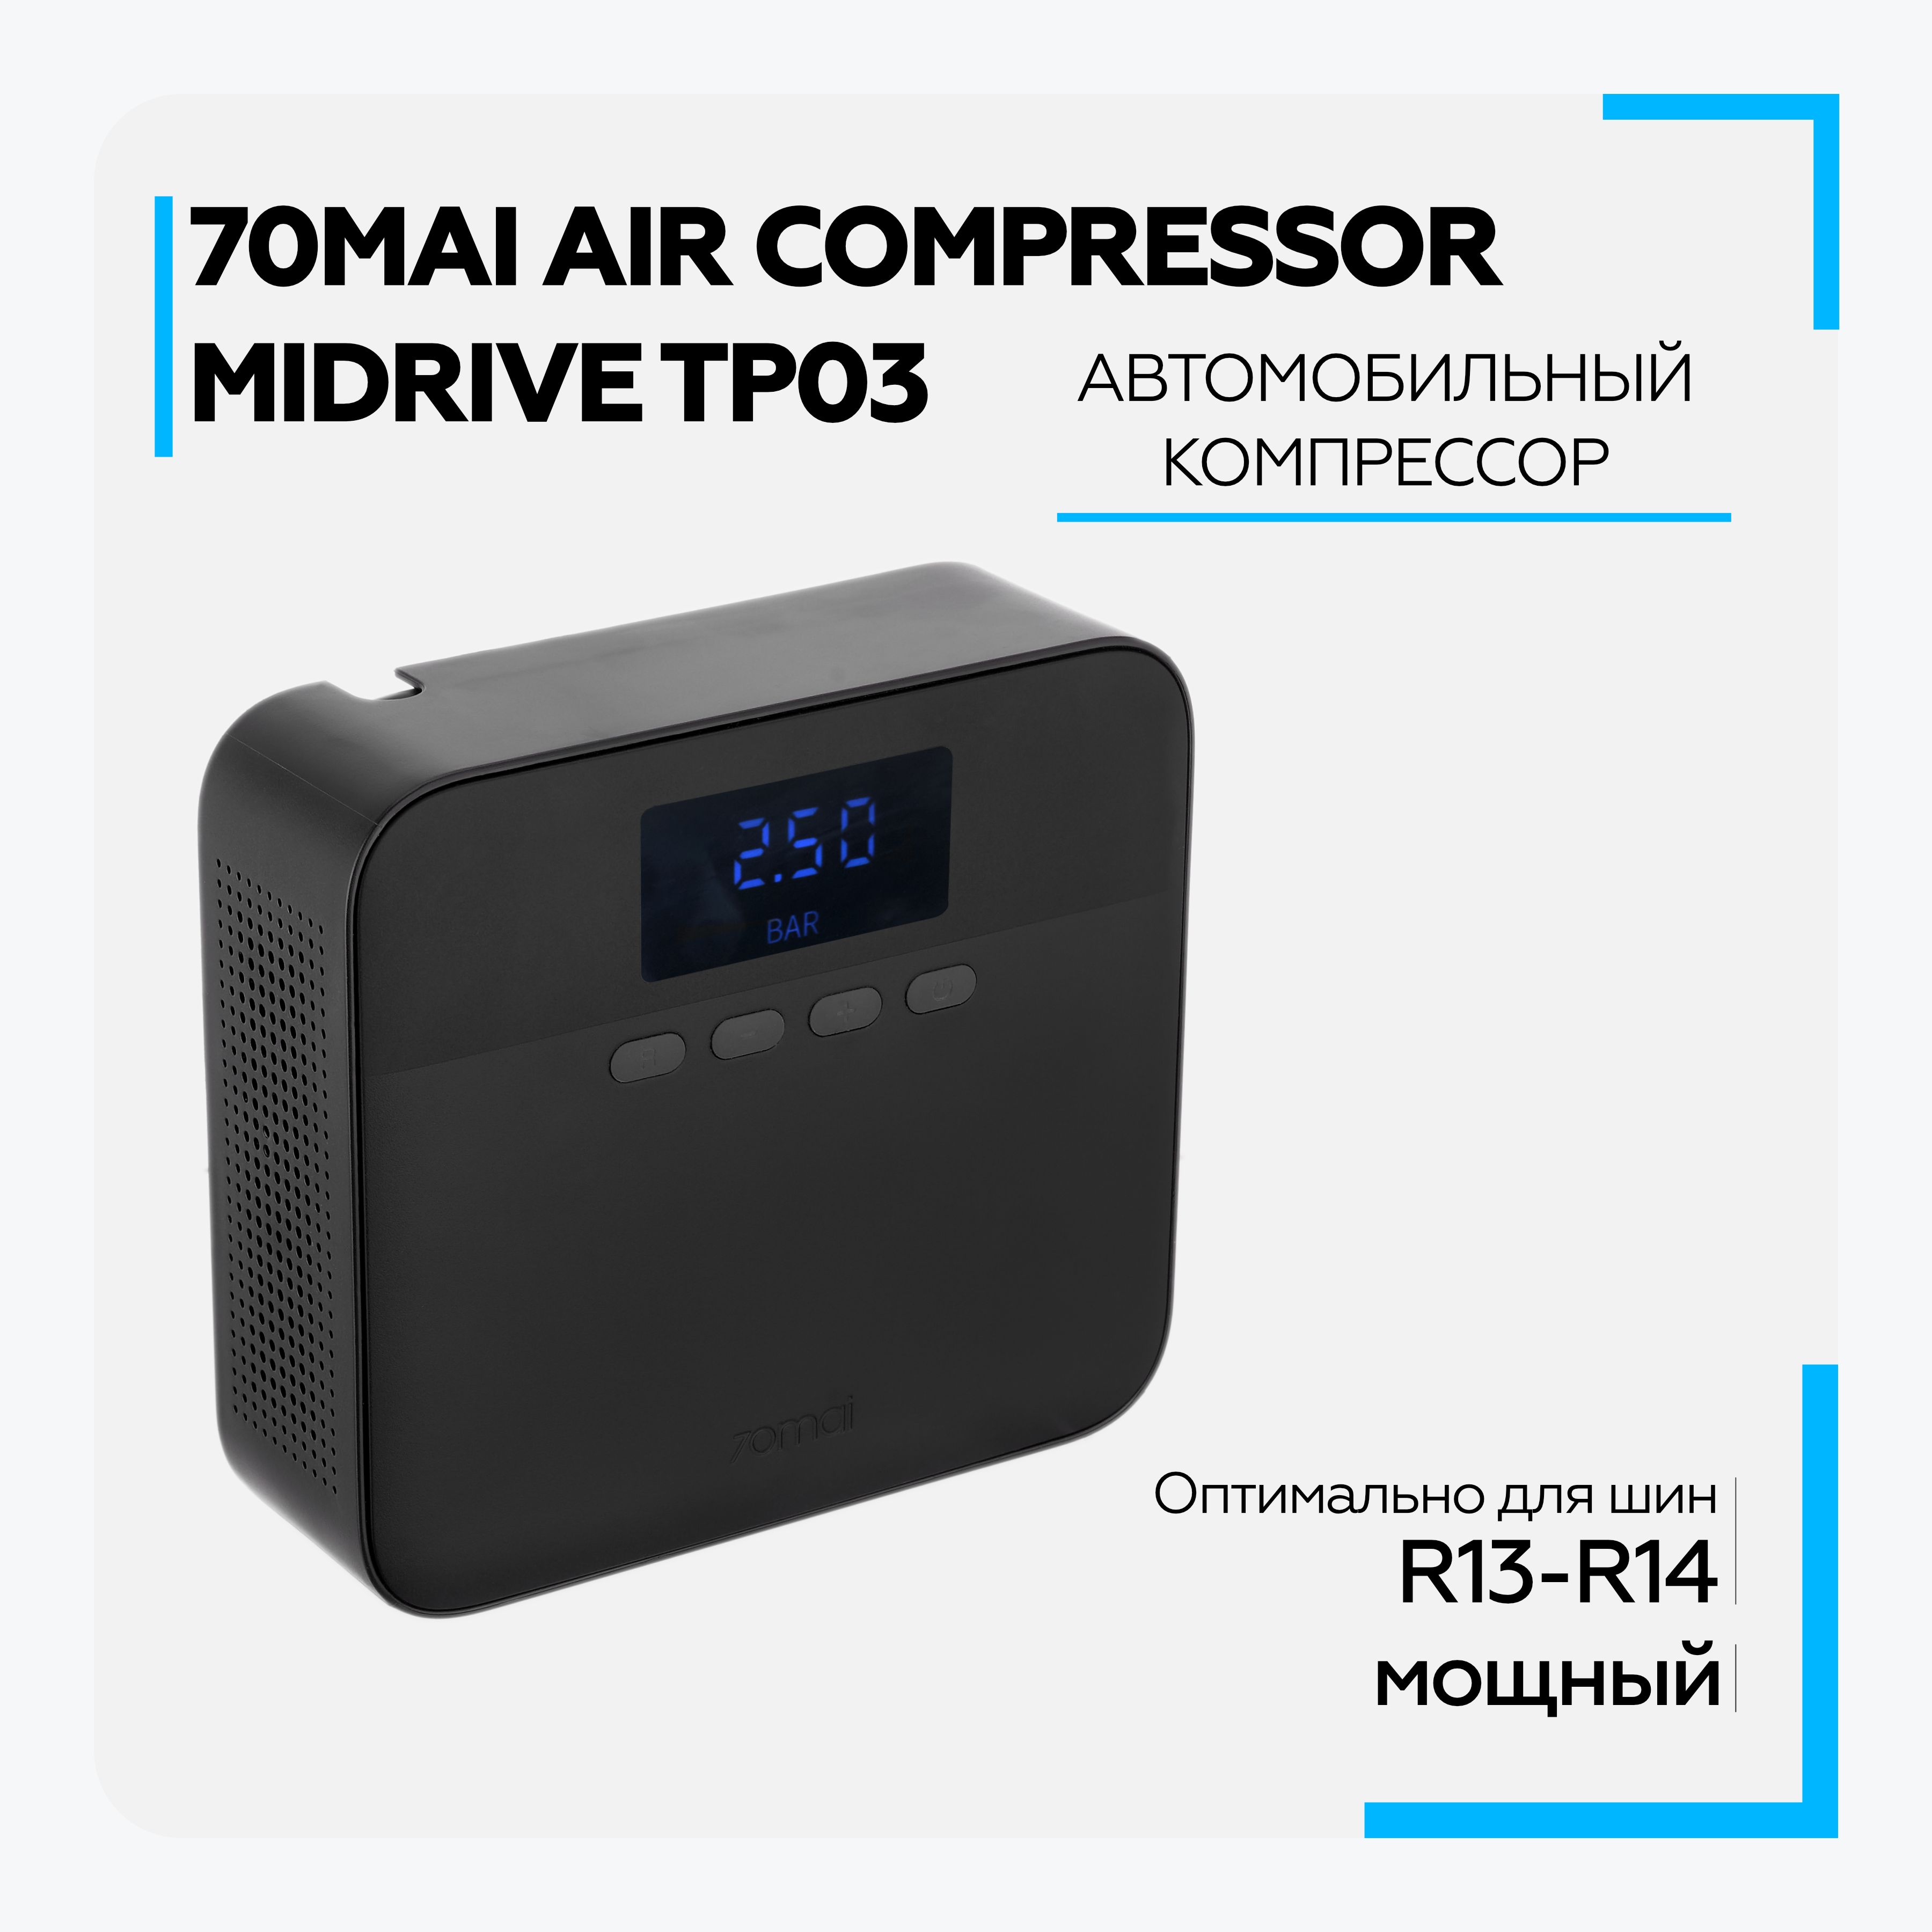 Автомобильный компрессор Xiaomi 70mai Air Compressor Lite (MIDRIVE tp03). Автомобильный компрессор 70mai Air Compressor Lite MIDRIVE. Автомобильный компрессор 70mai Air Compressor Lite MIDRIVE tp03. 70mai Air Compressor Lite.